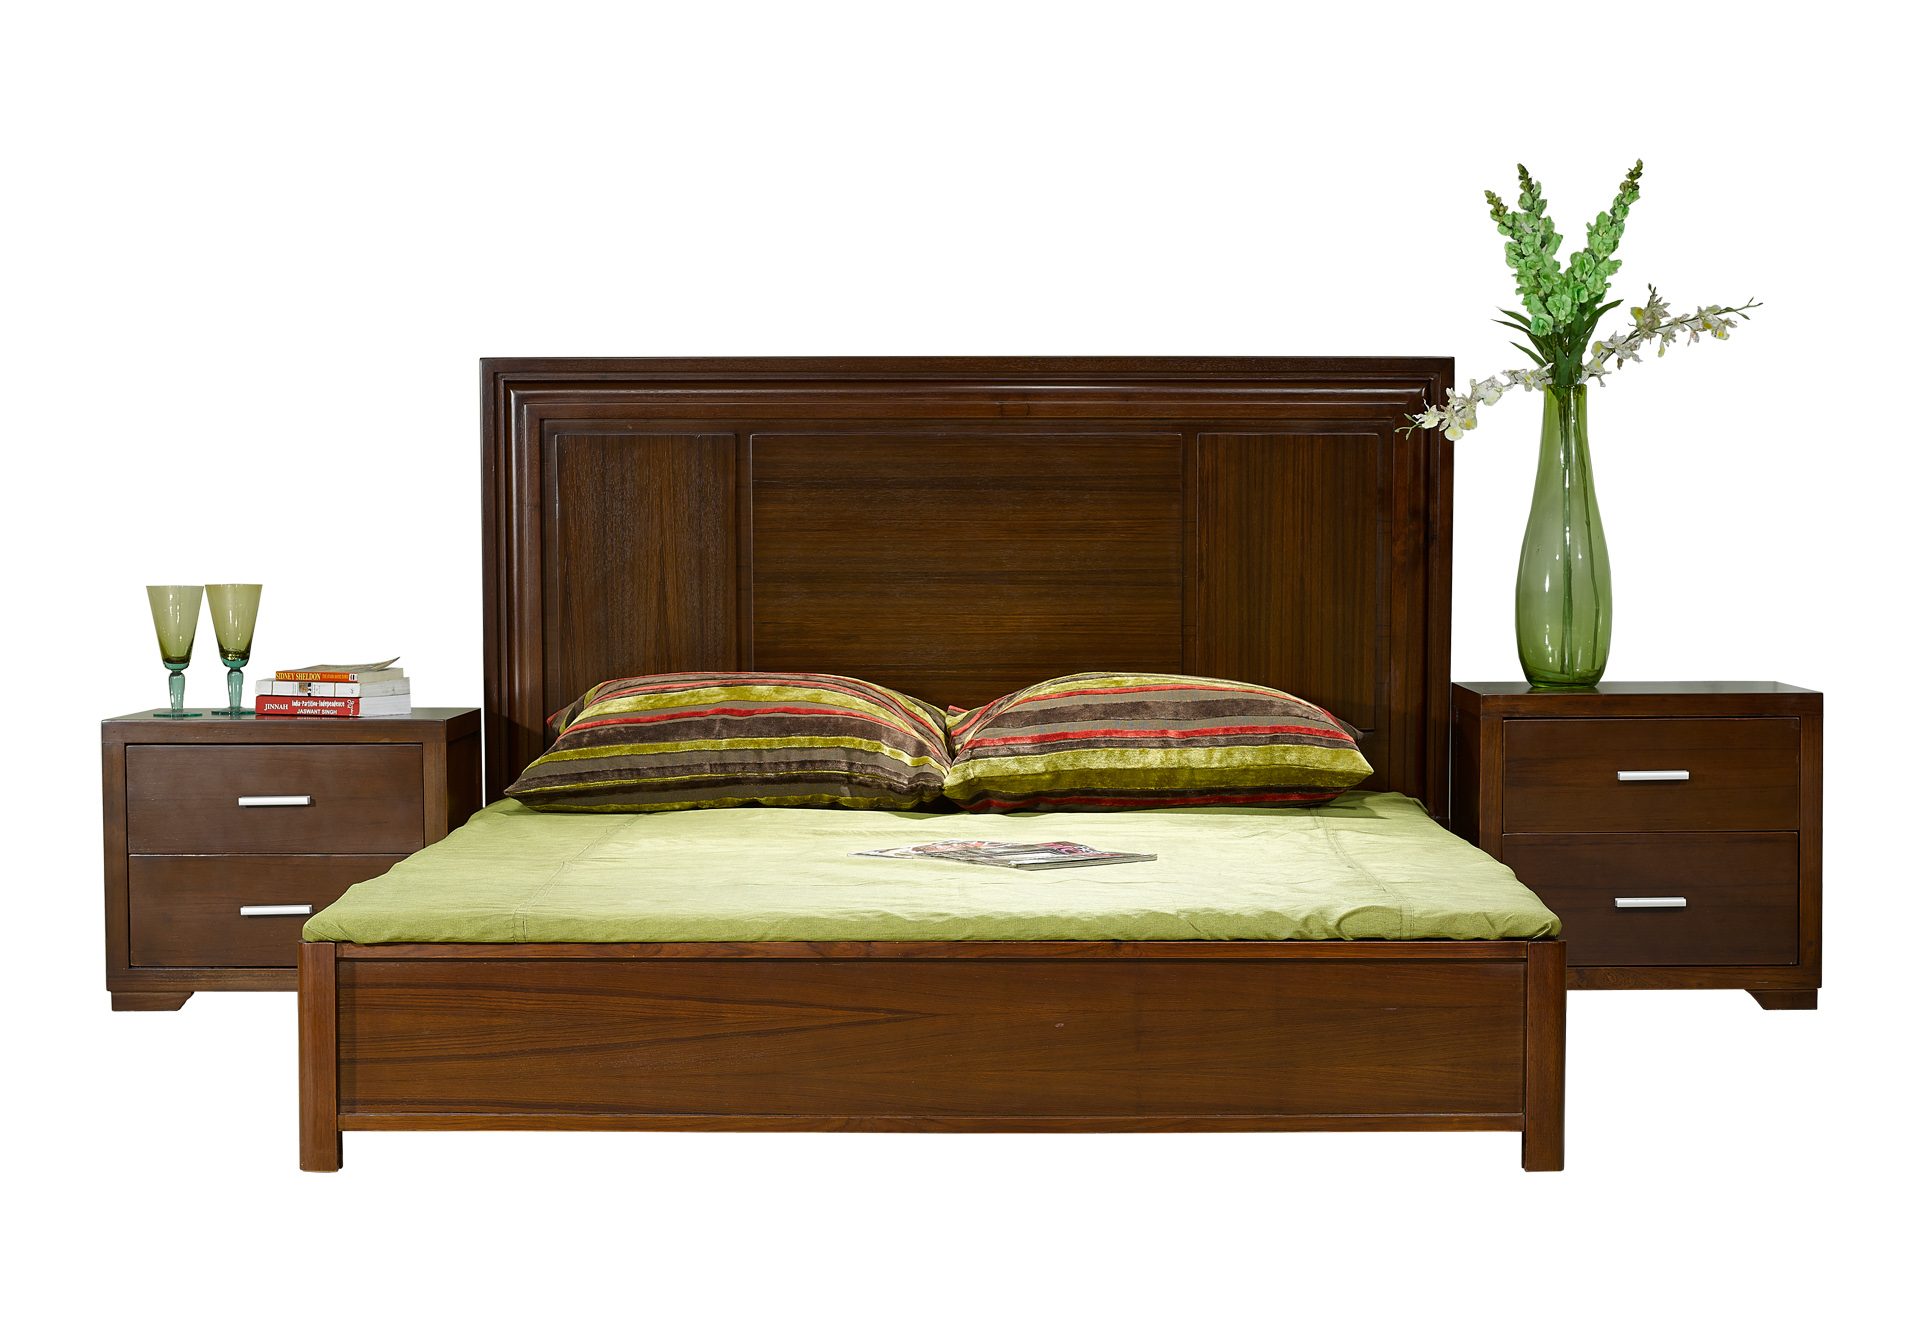 Hatil Bedroom Furniture Bedroom Review Design